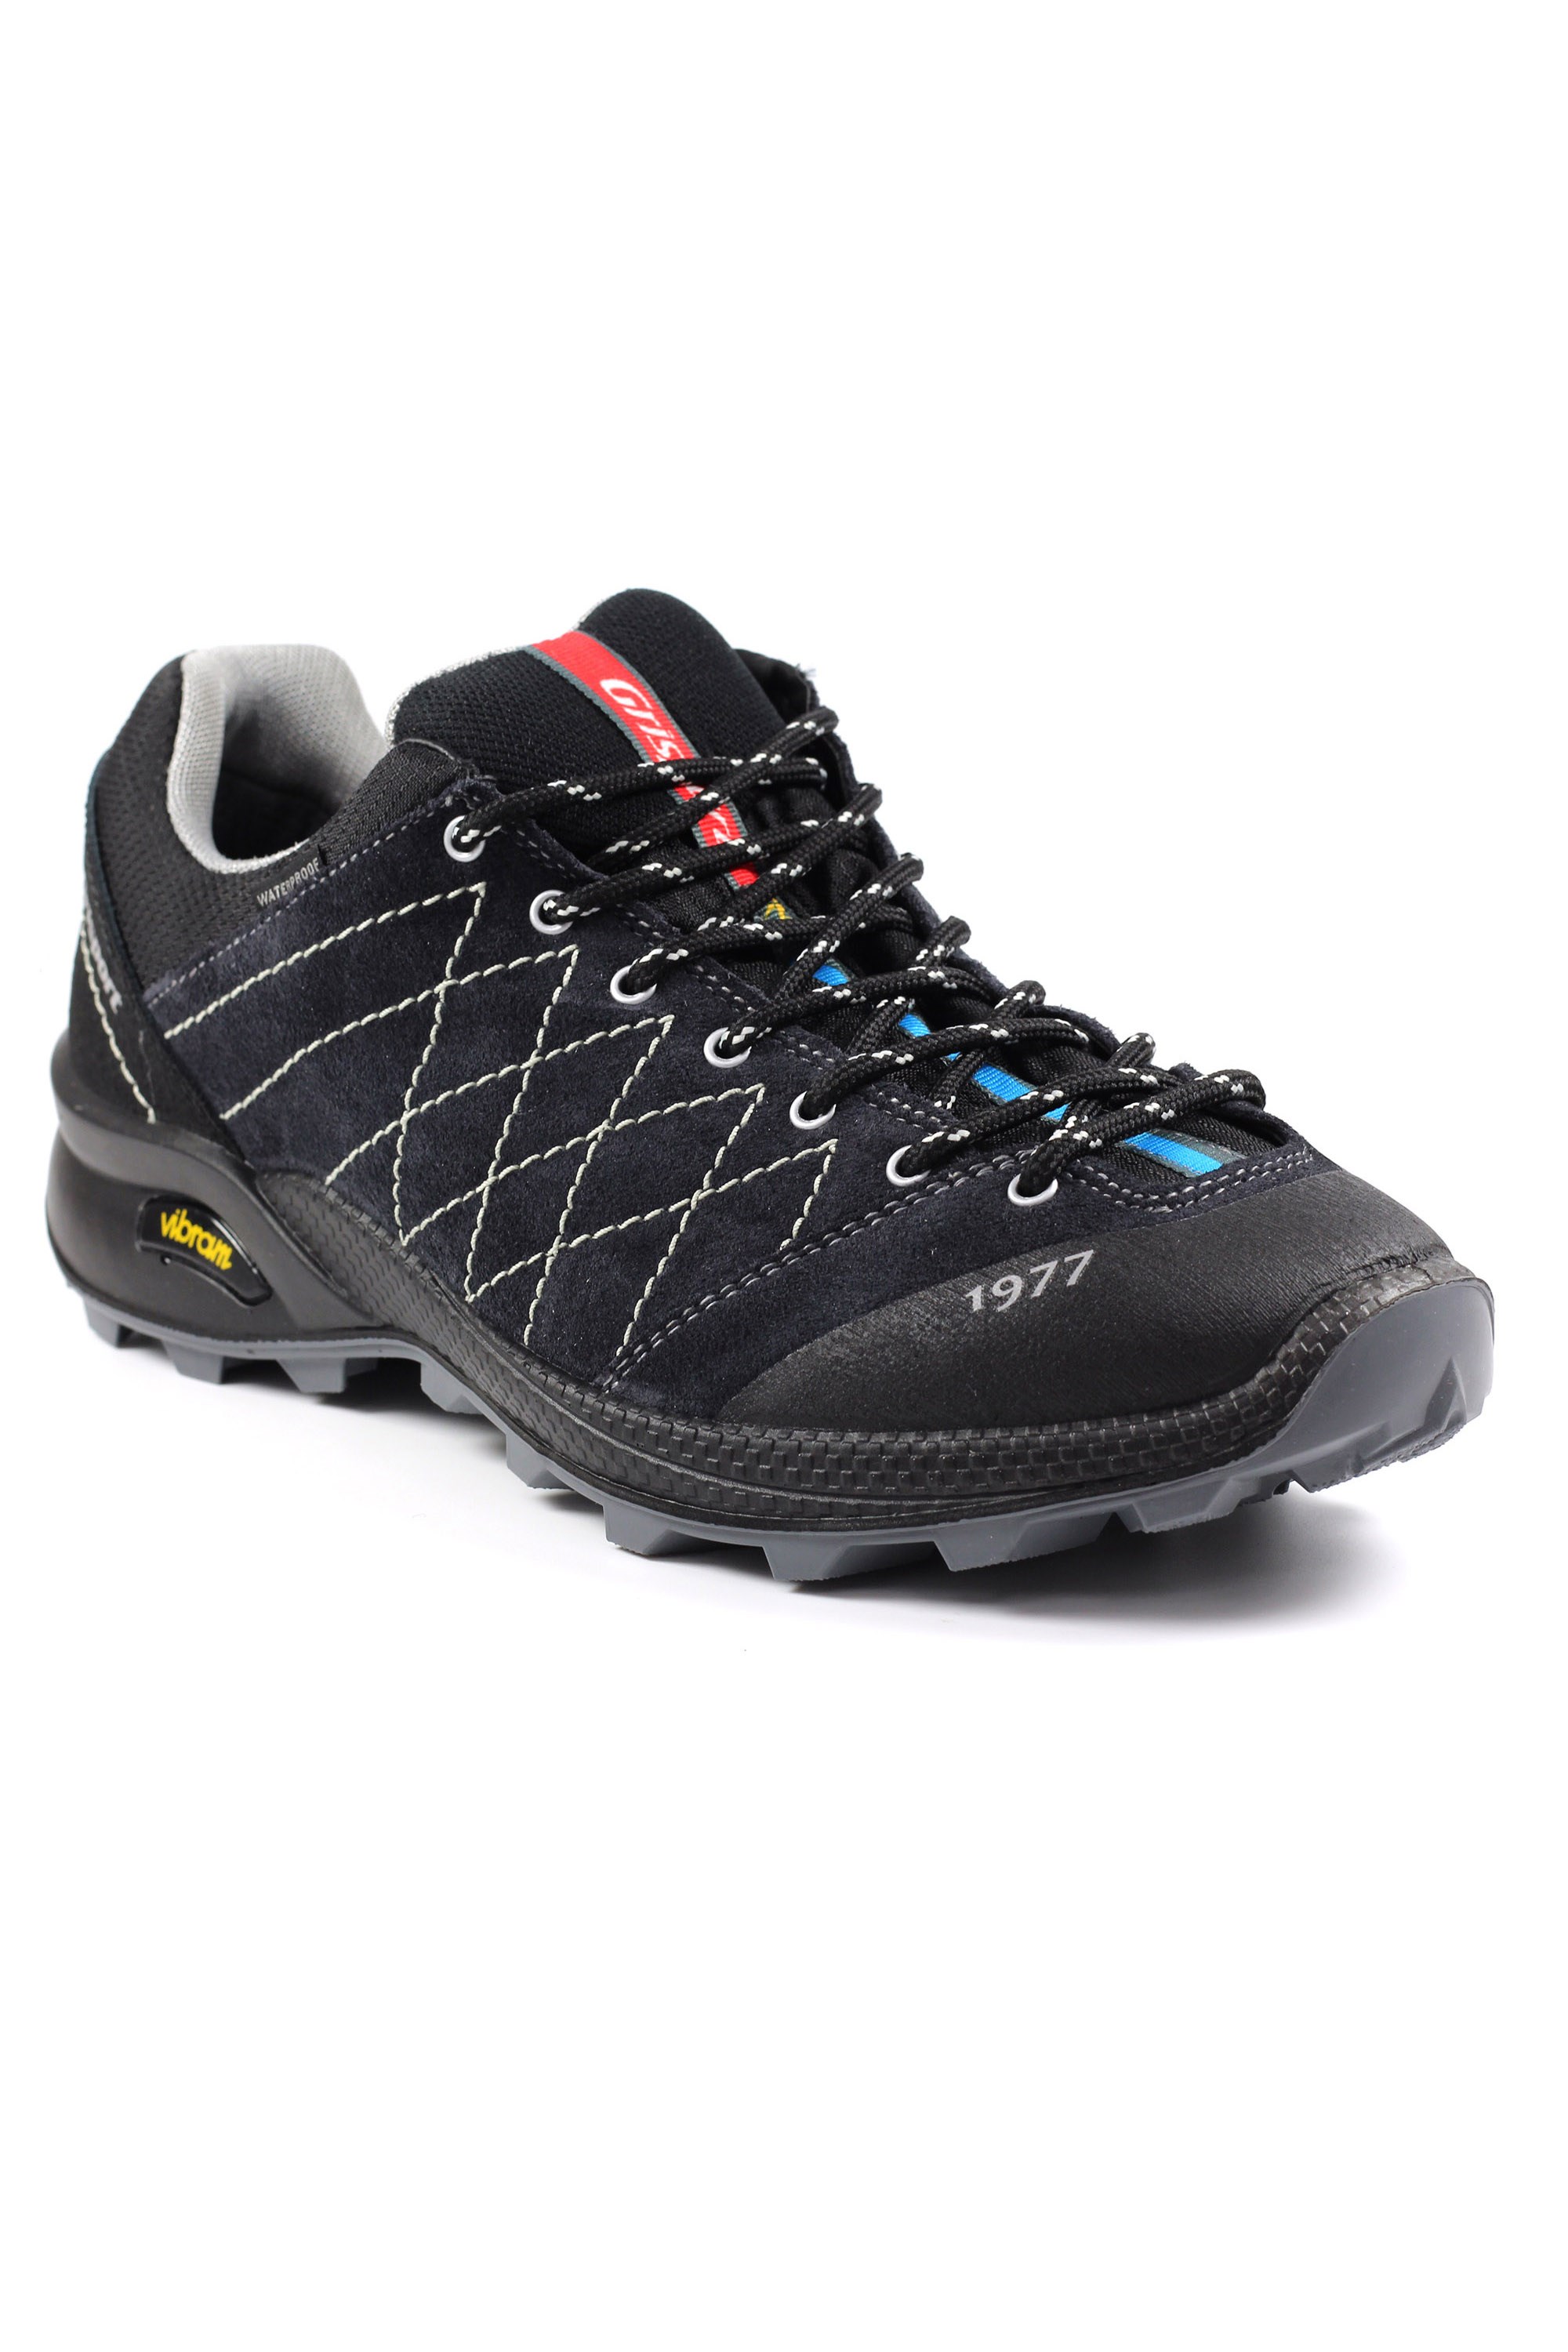 Argon Mens Waterproof Walking Shoe -